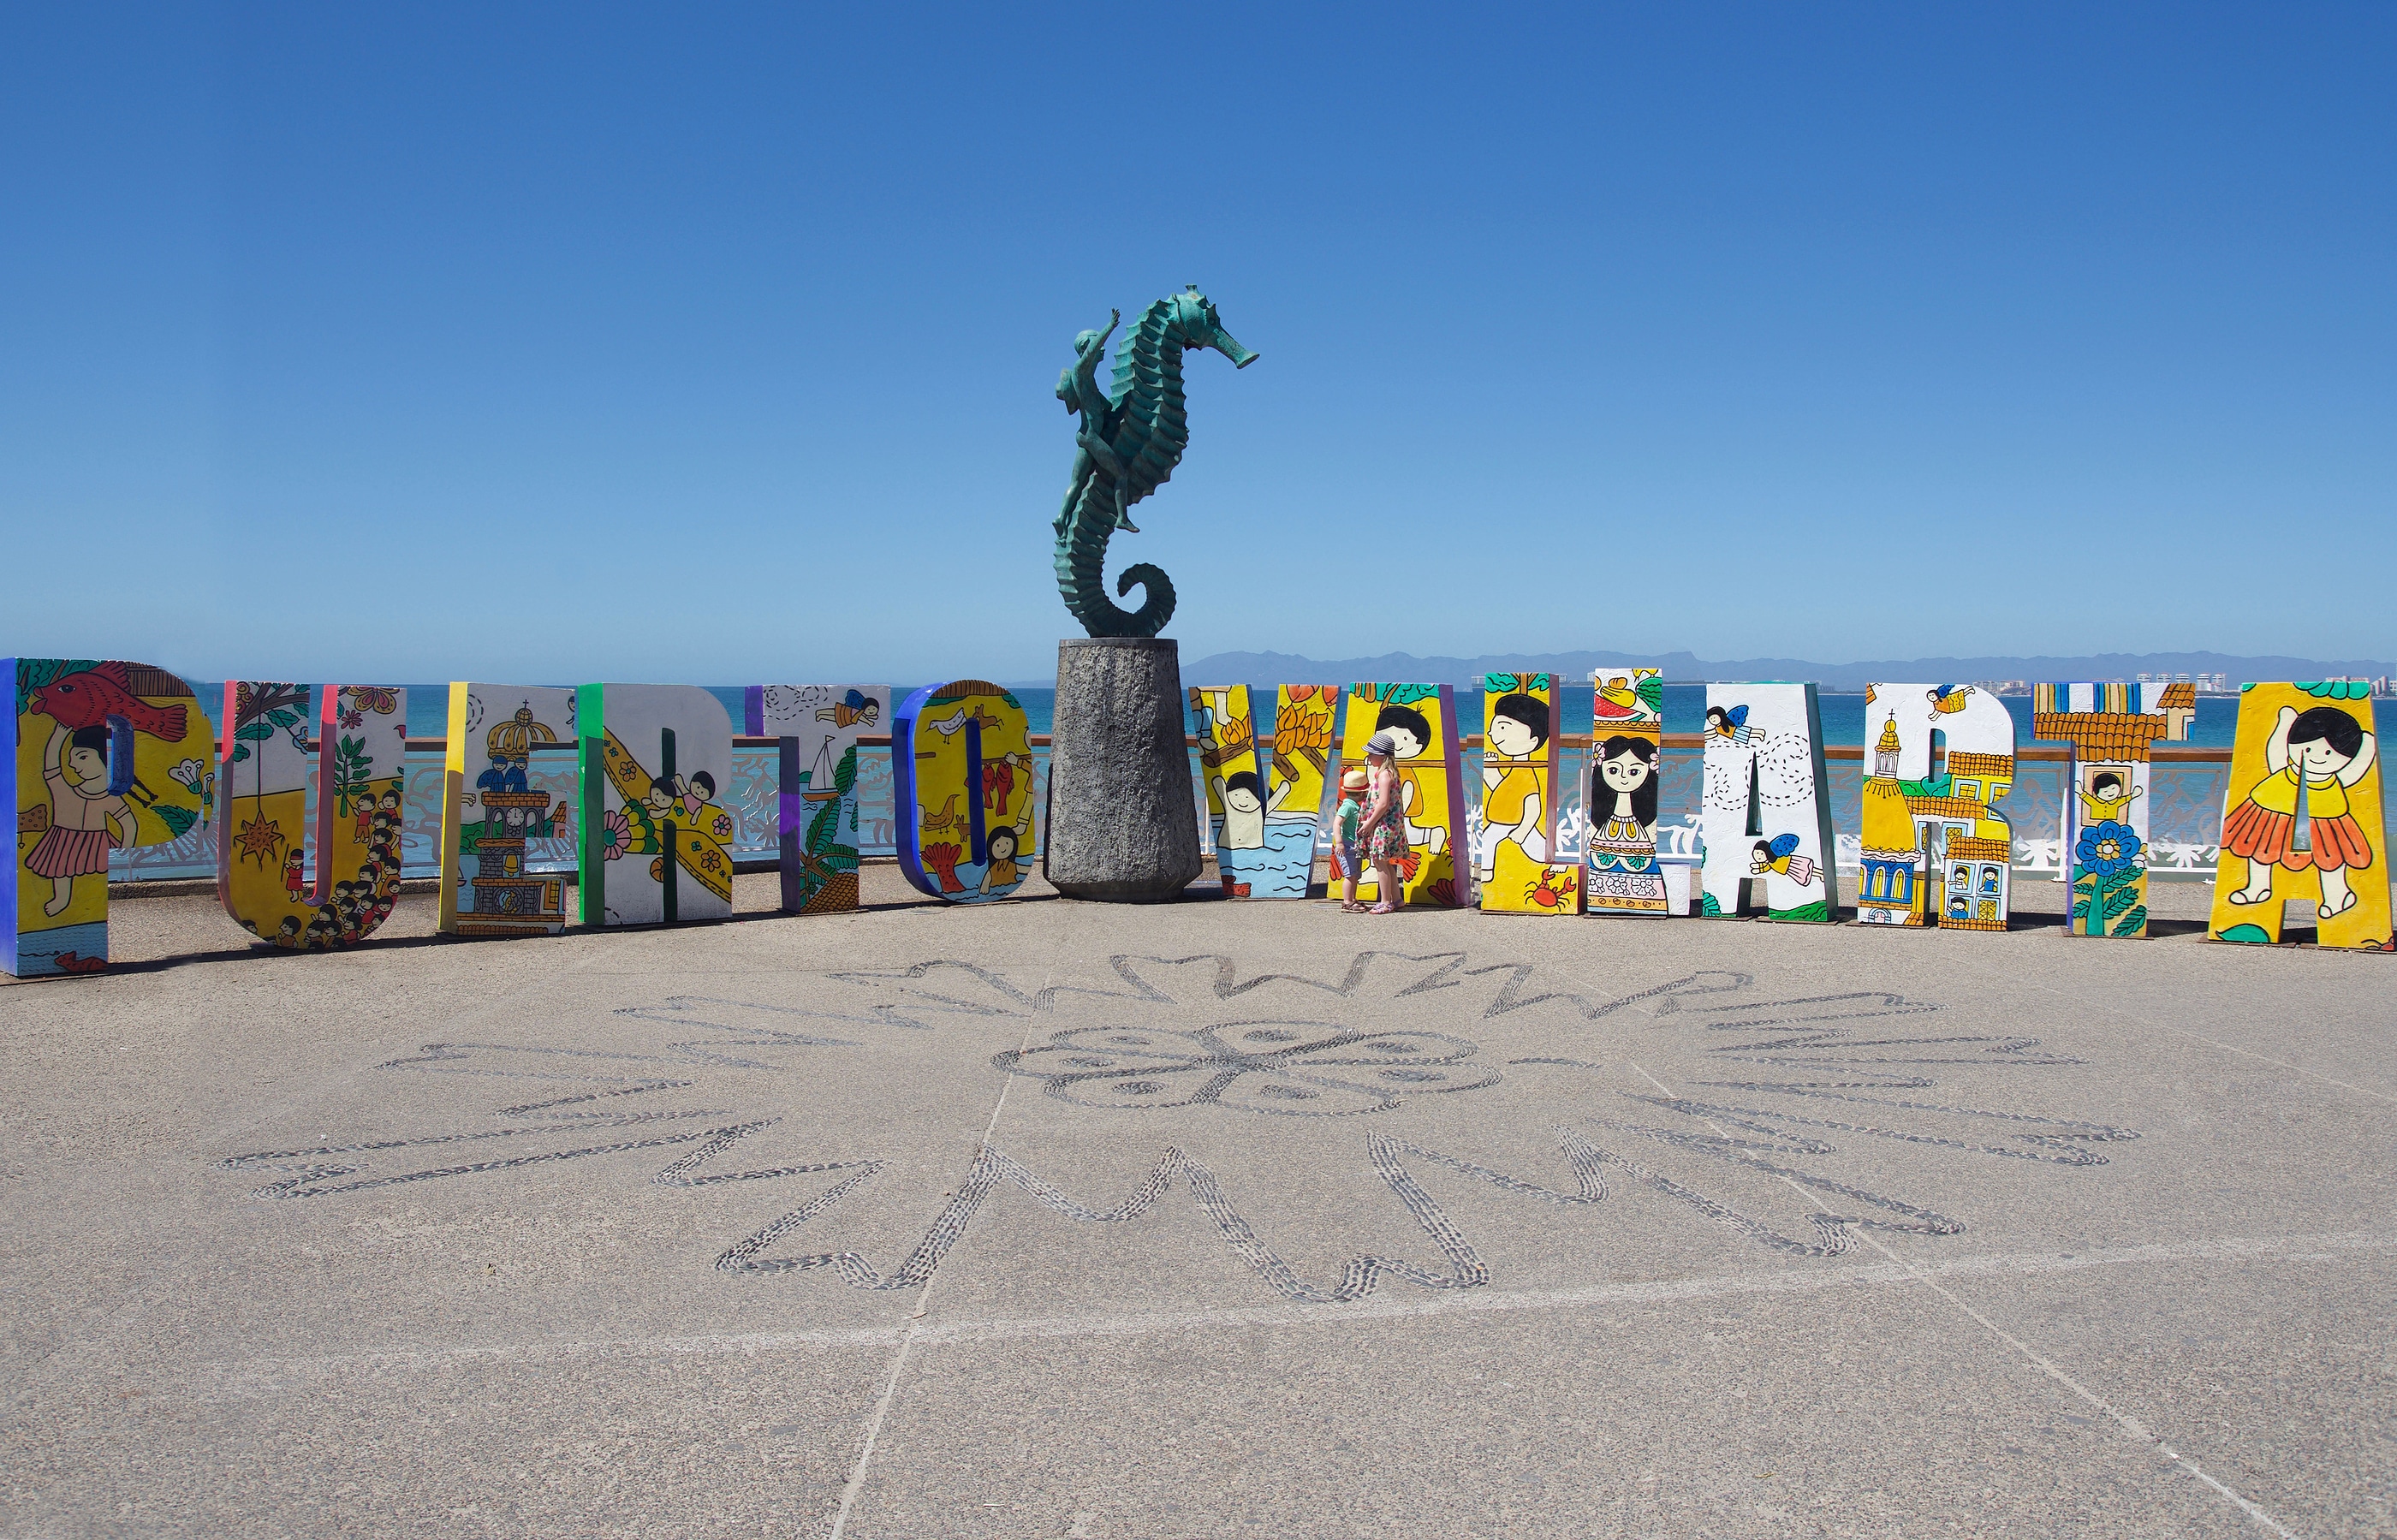 Most Interesting Landmarks in Puerto Vallarta by Astuto Travel